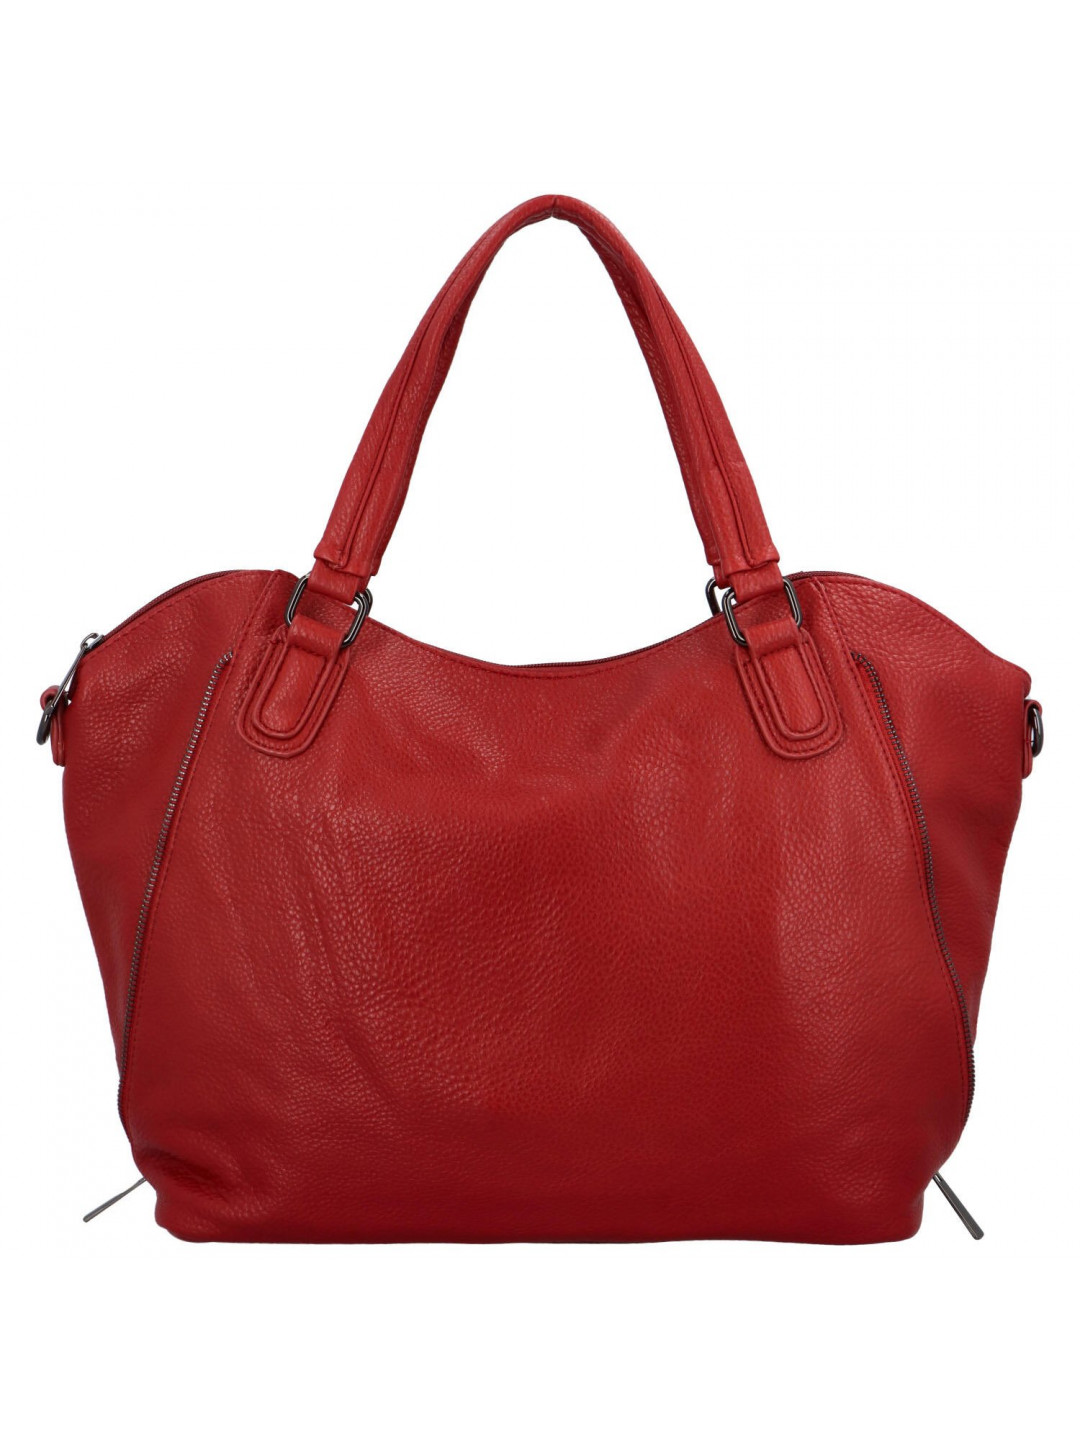 Dámská kabelka na rameno červená – Paolo bags Wahidas